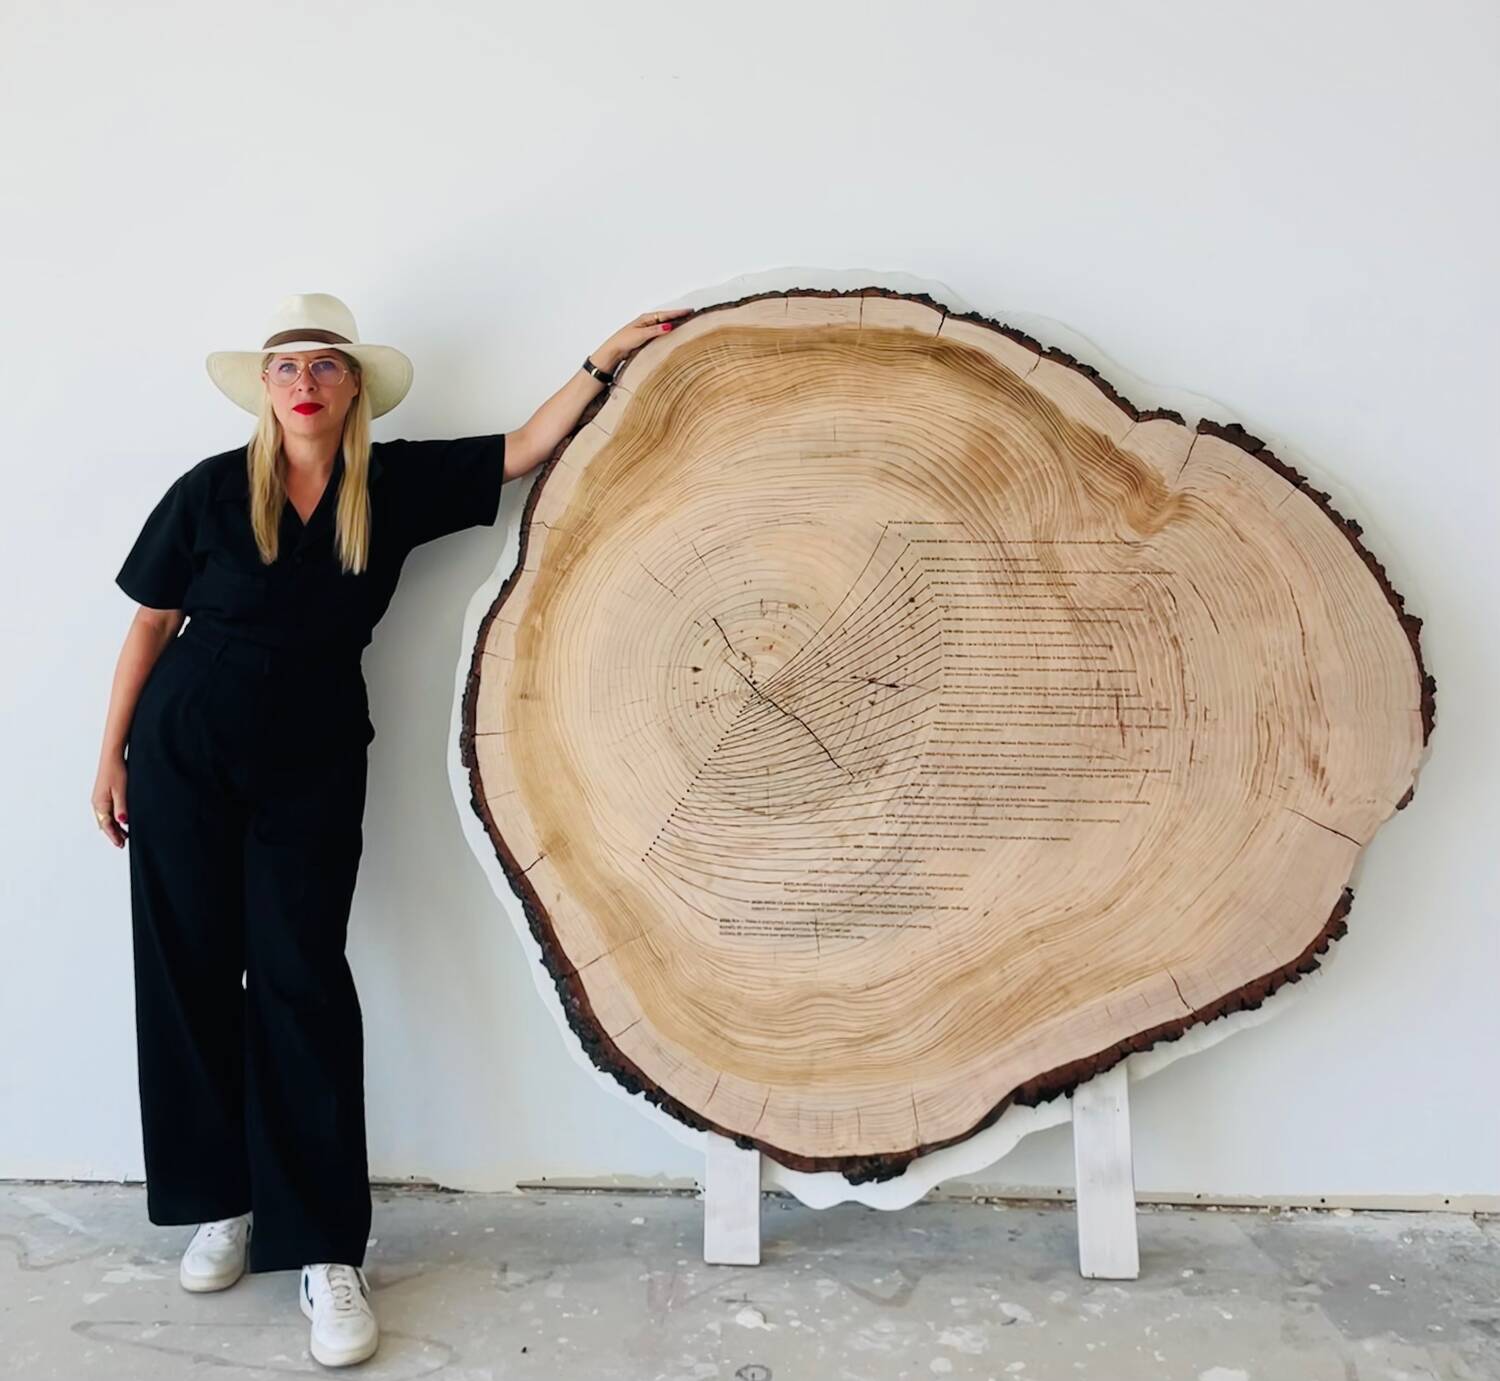 Tiffany Shlain with tree ring art piece